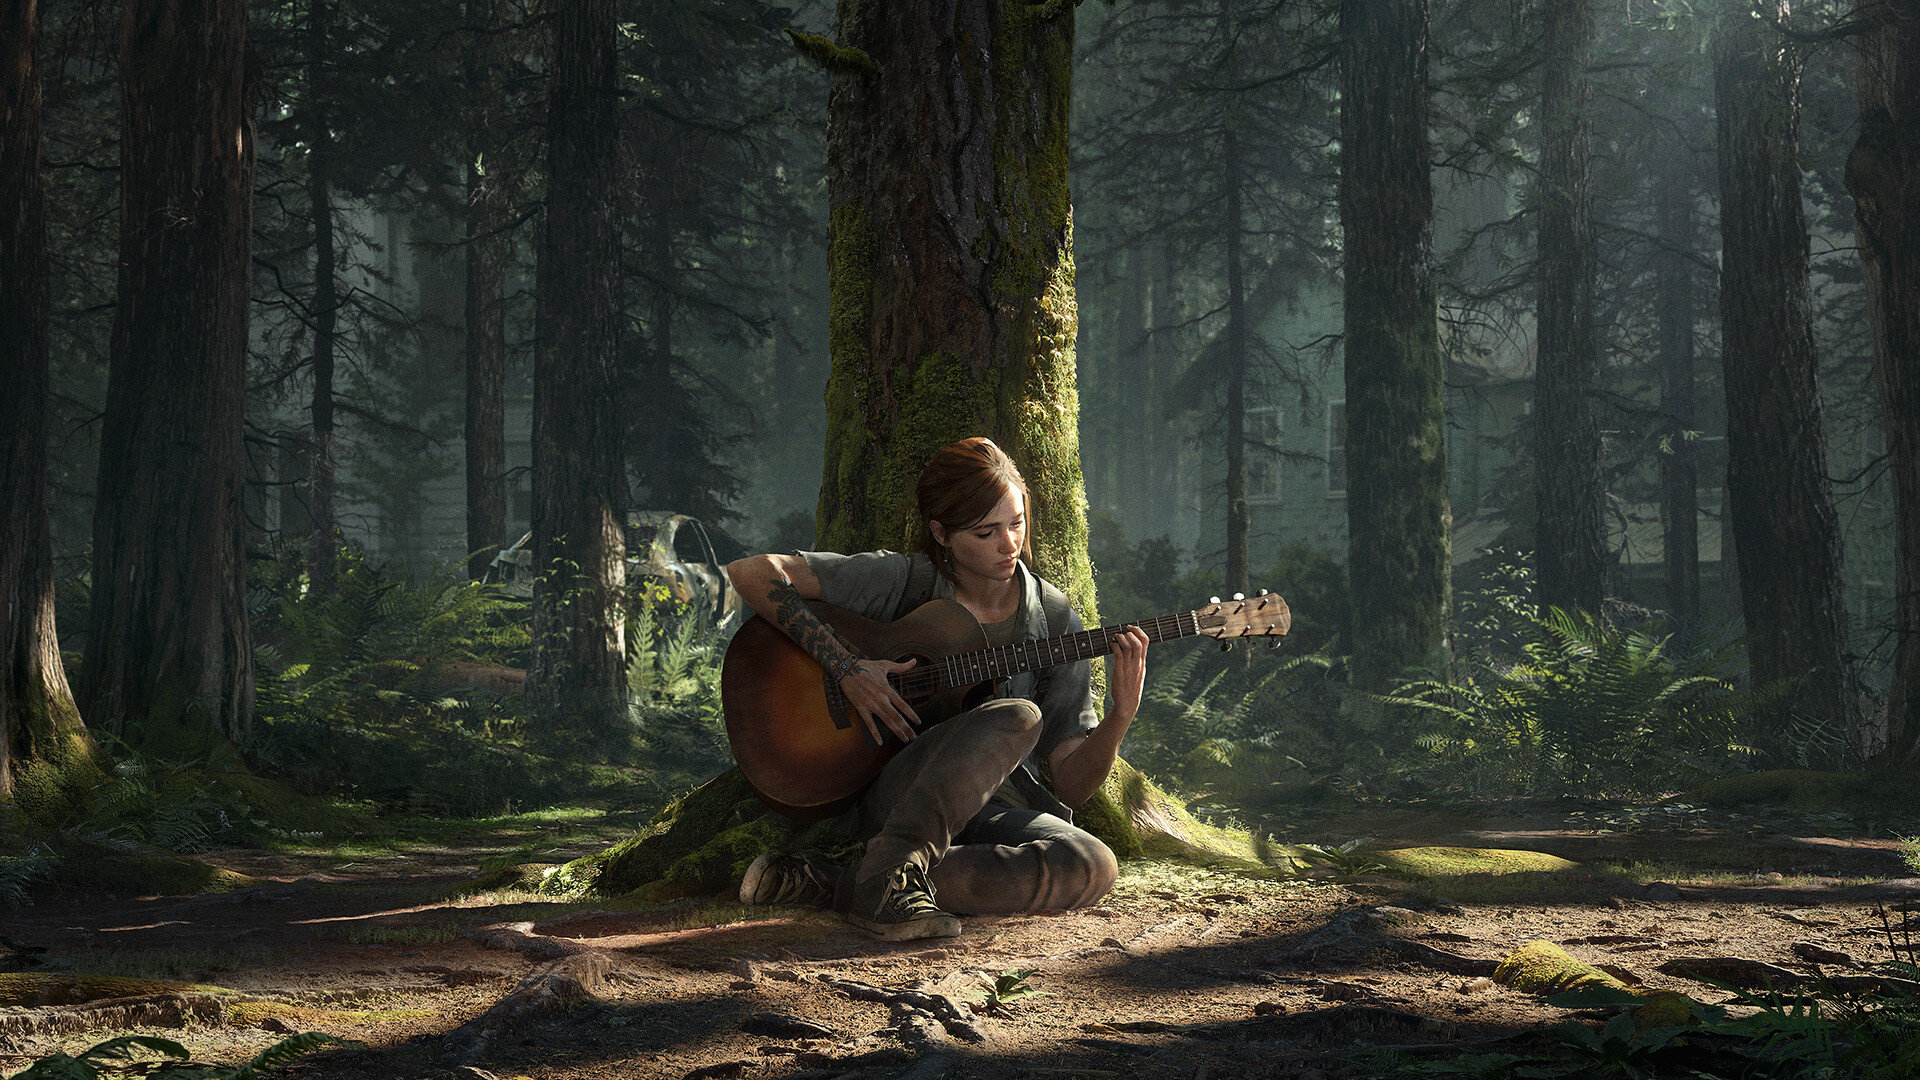 Je The Last of Us Part II nejlepší hrou této generace? Čtěte naší recenzi